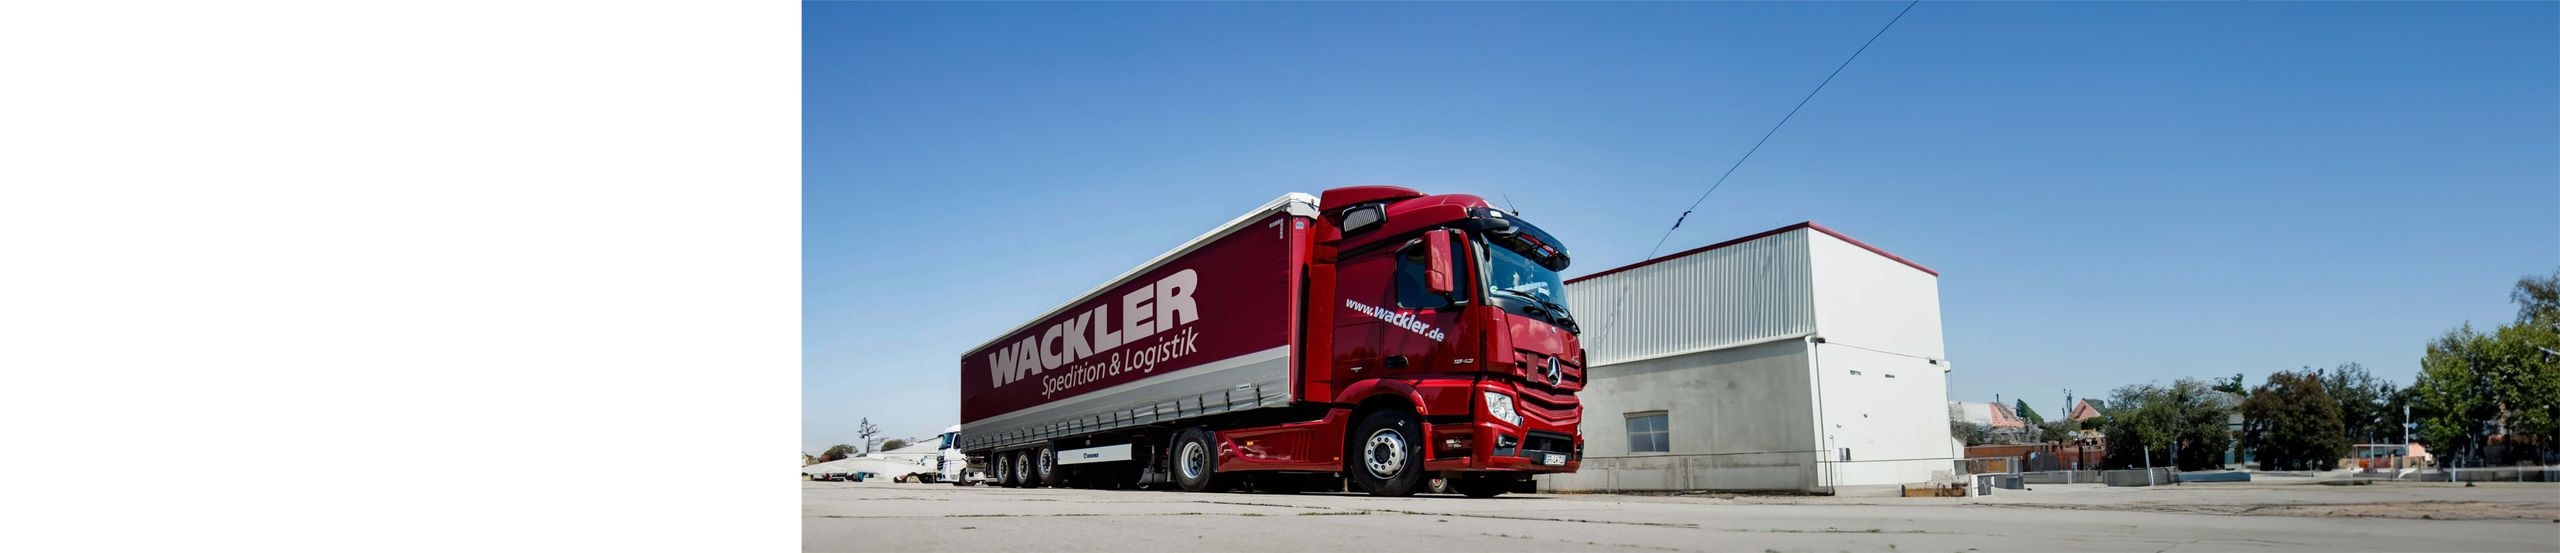 Ein roter LKW der Firma Wackler Spedition & Logistik steht vor einem Gebäude